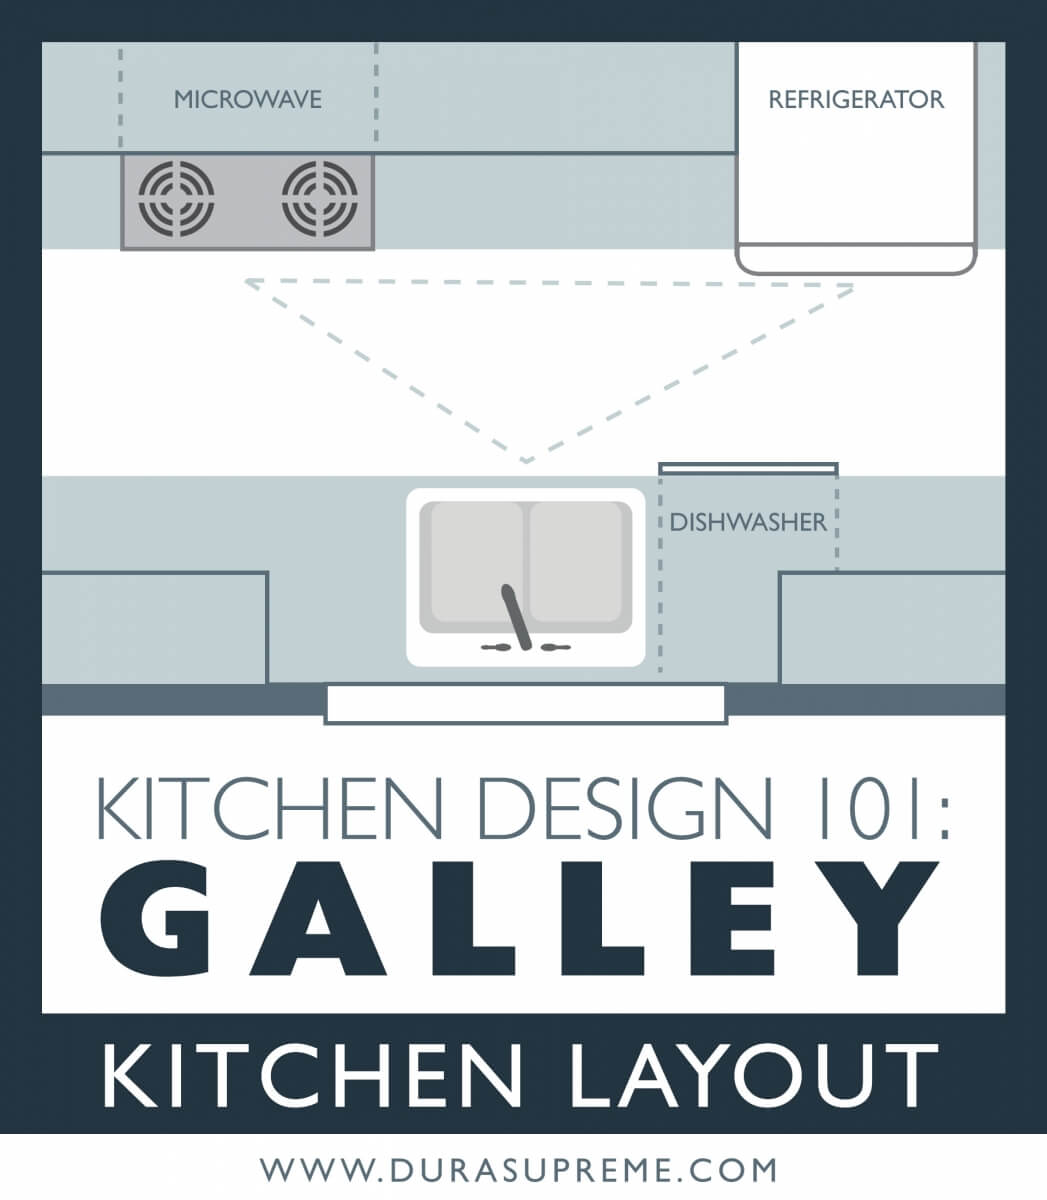 Galley Kitchen Layout design tips